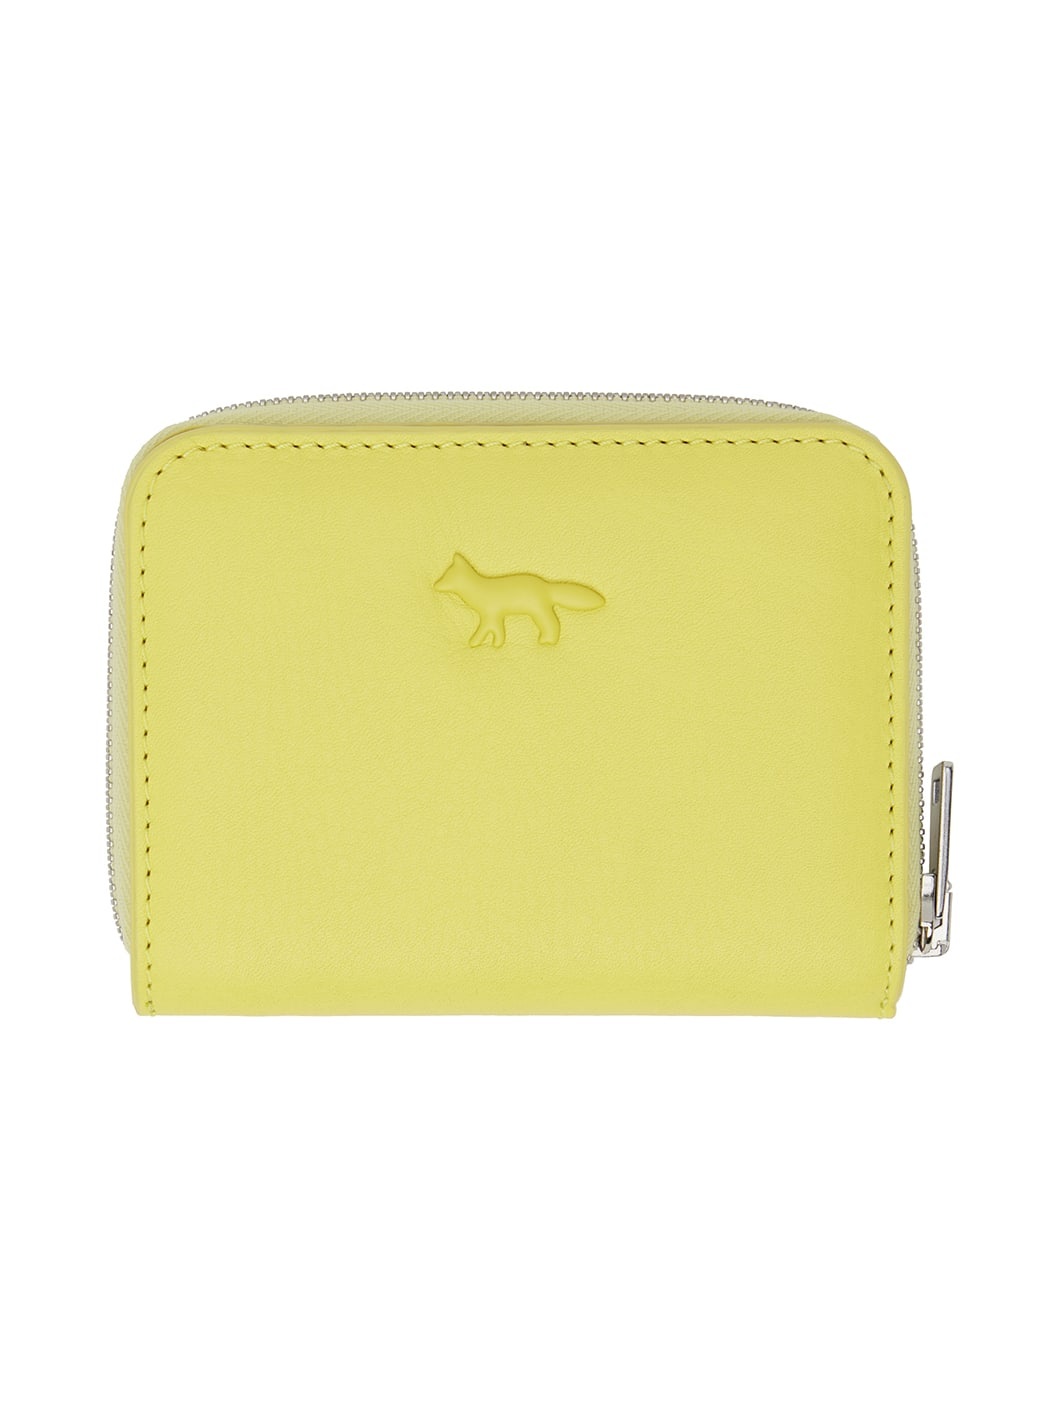 Yellow Cloud Zipped Wallet - 1